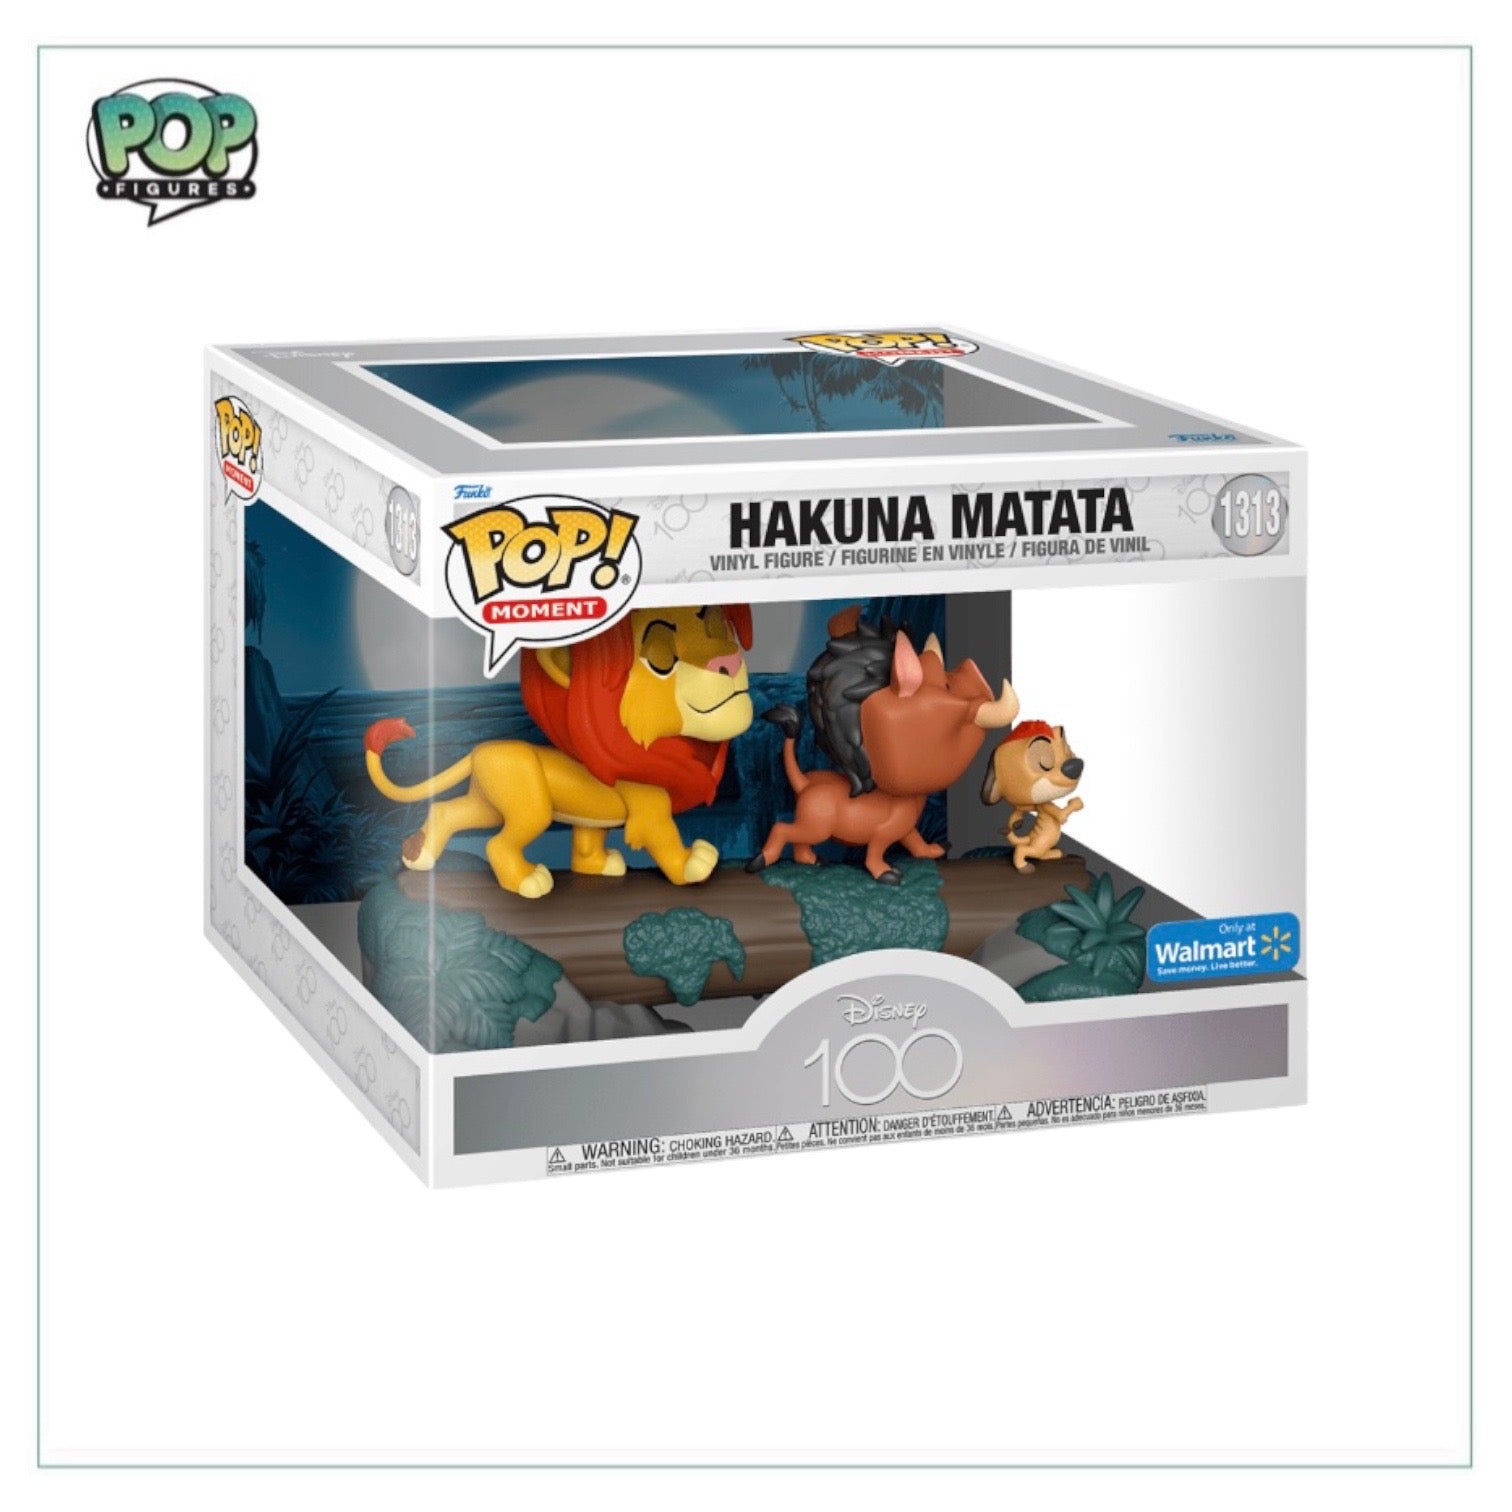 Hakuna Matata #1313 Funko Pop Moment! - Disney 100 - Walmart Exclusive - Condition 7/10